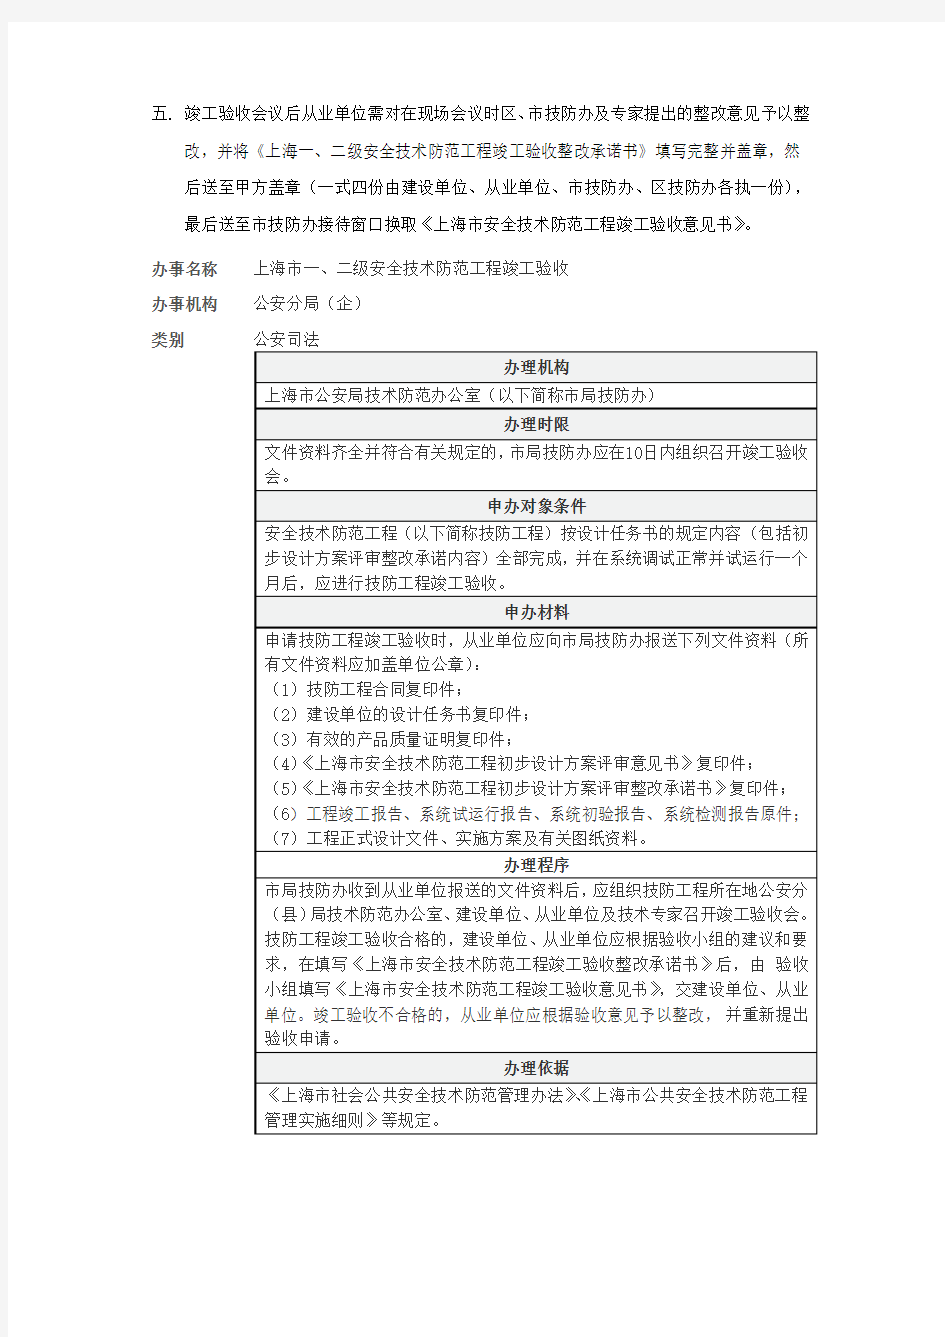 上海安防工程送审上海市公安局技术防范办公室流程